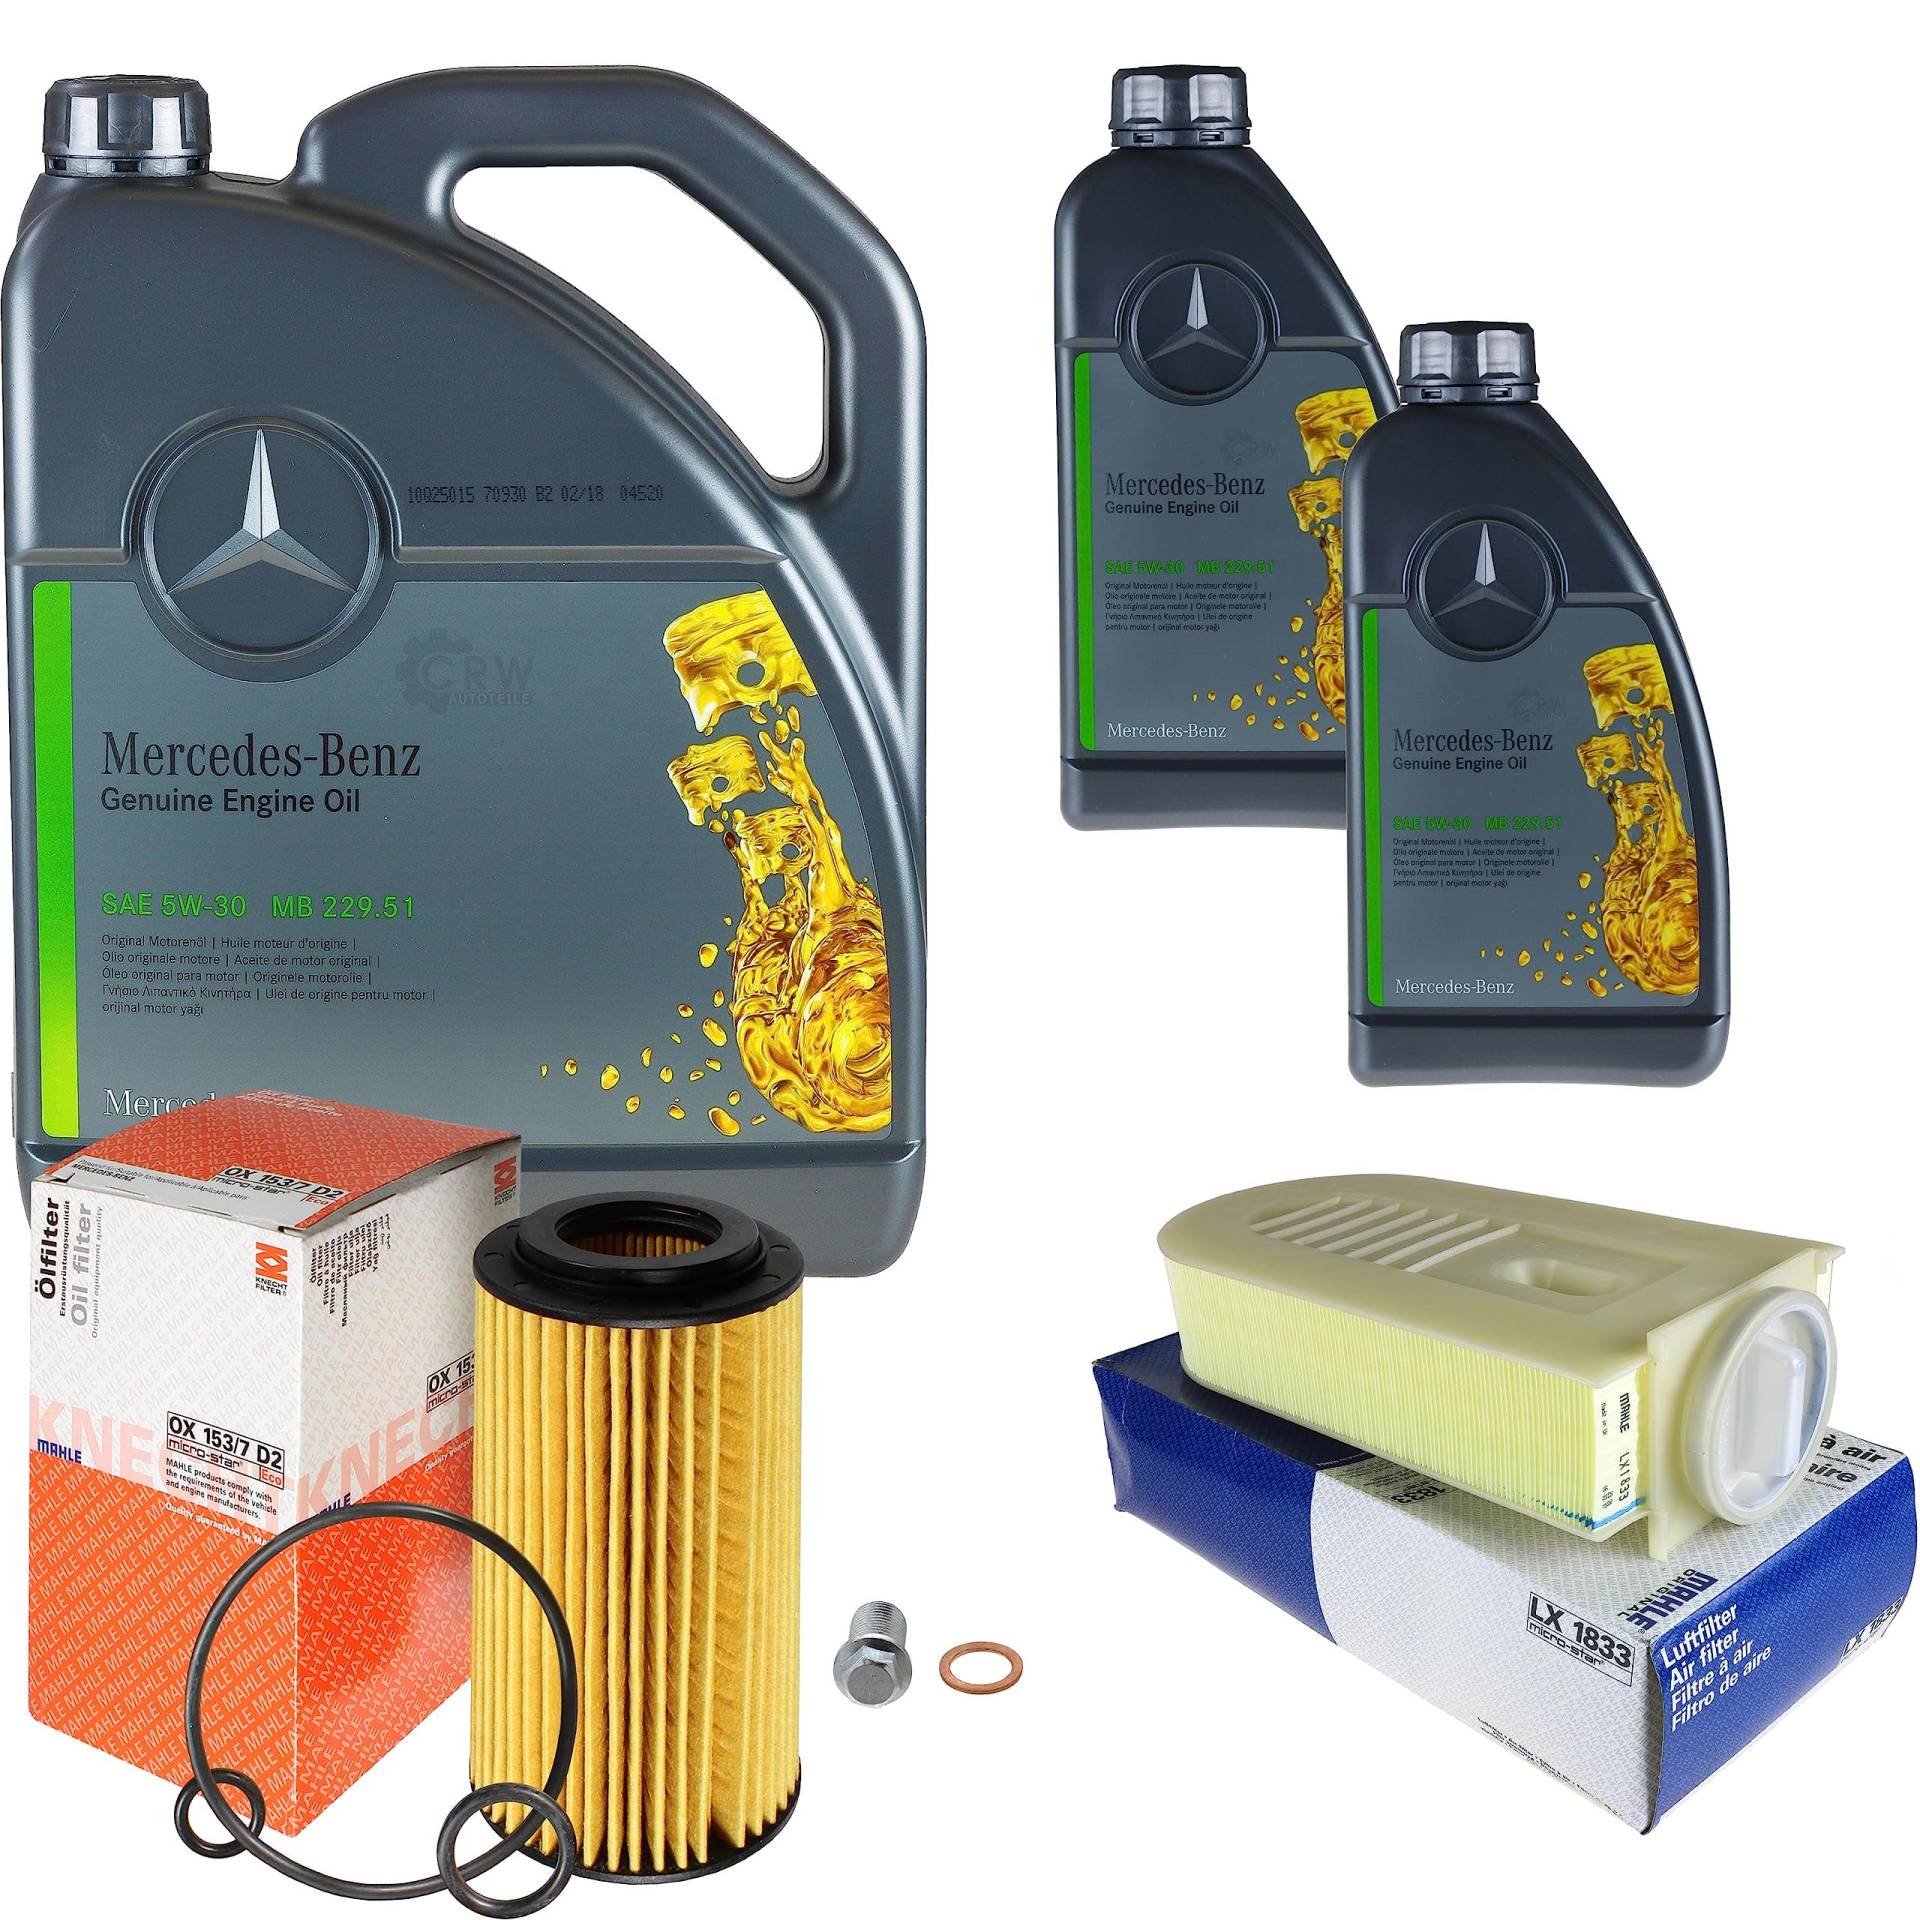 Inspektionspaket Wartungspaket Filterset mit 7 L Motoröl MB 229.51 5W-30, Ölfilter, Luftfilter, Verschlussschraube von EISENFELS